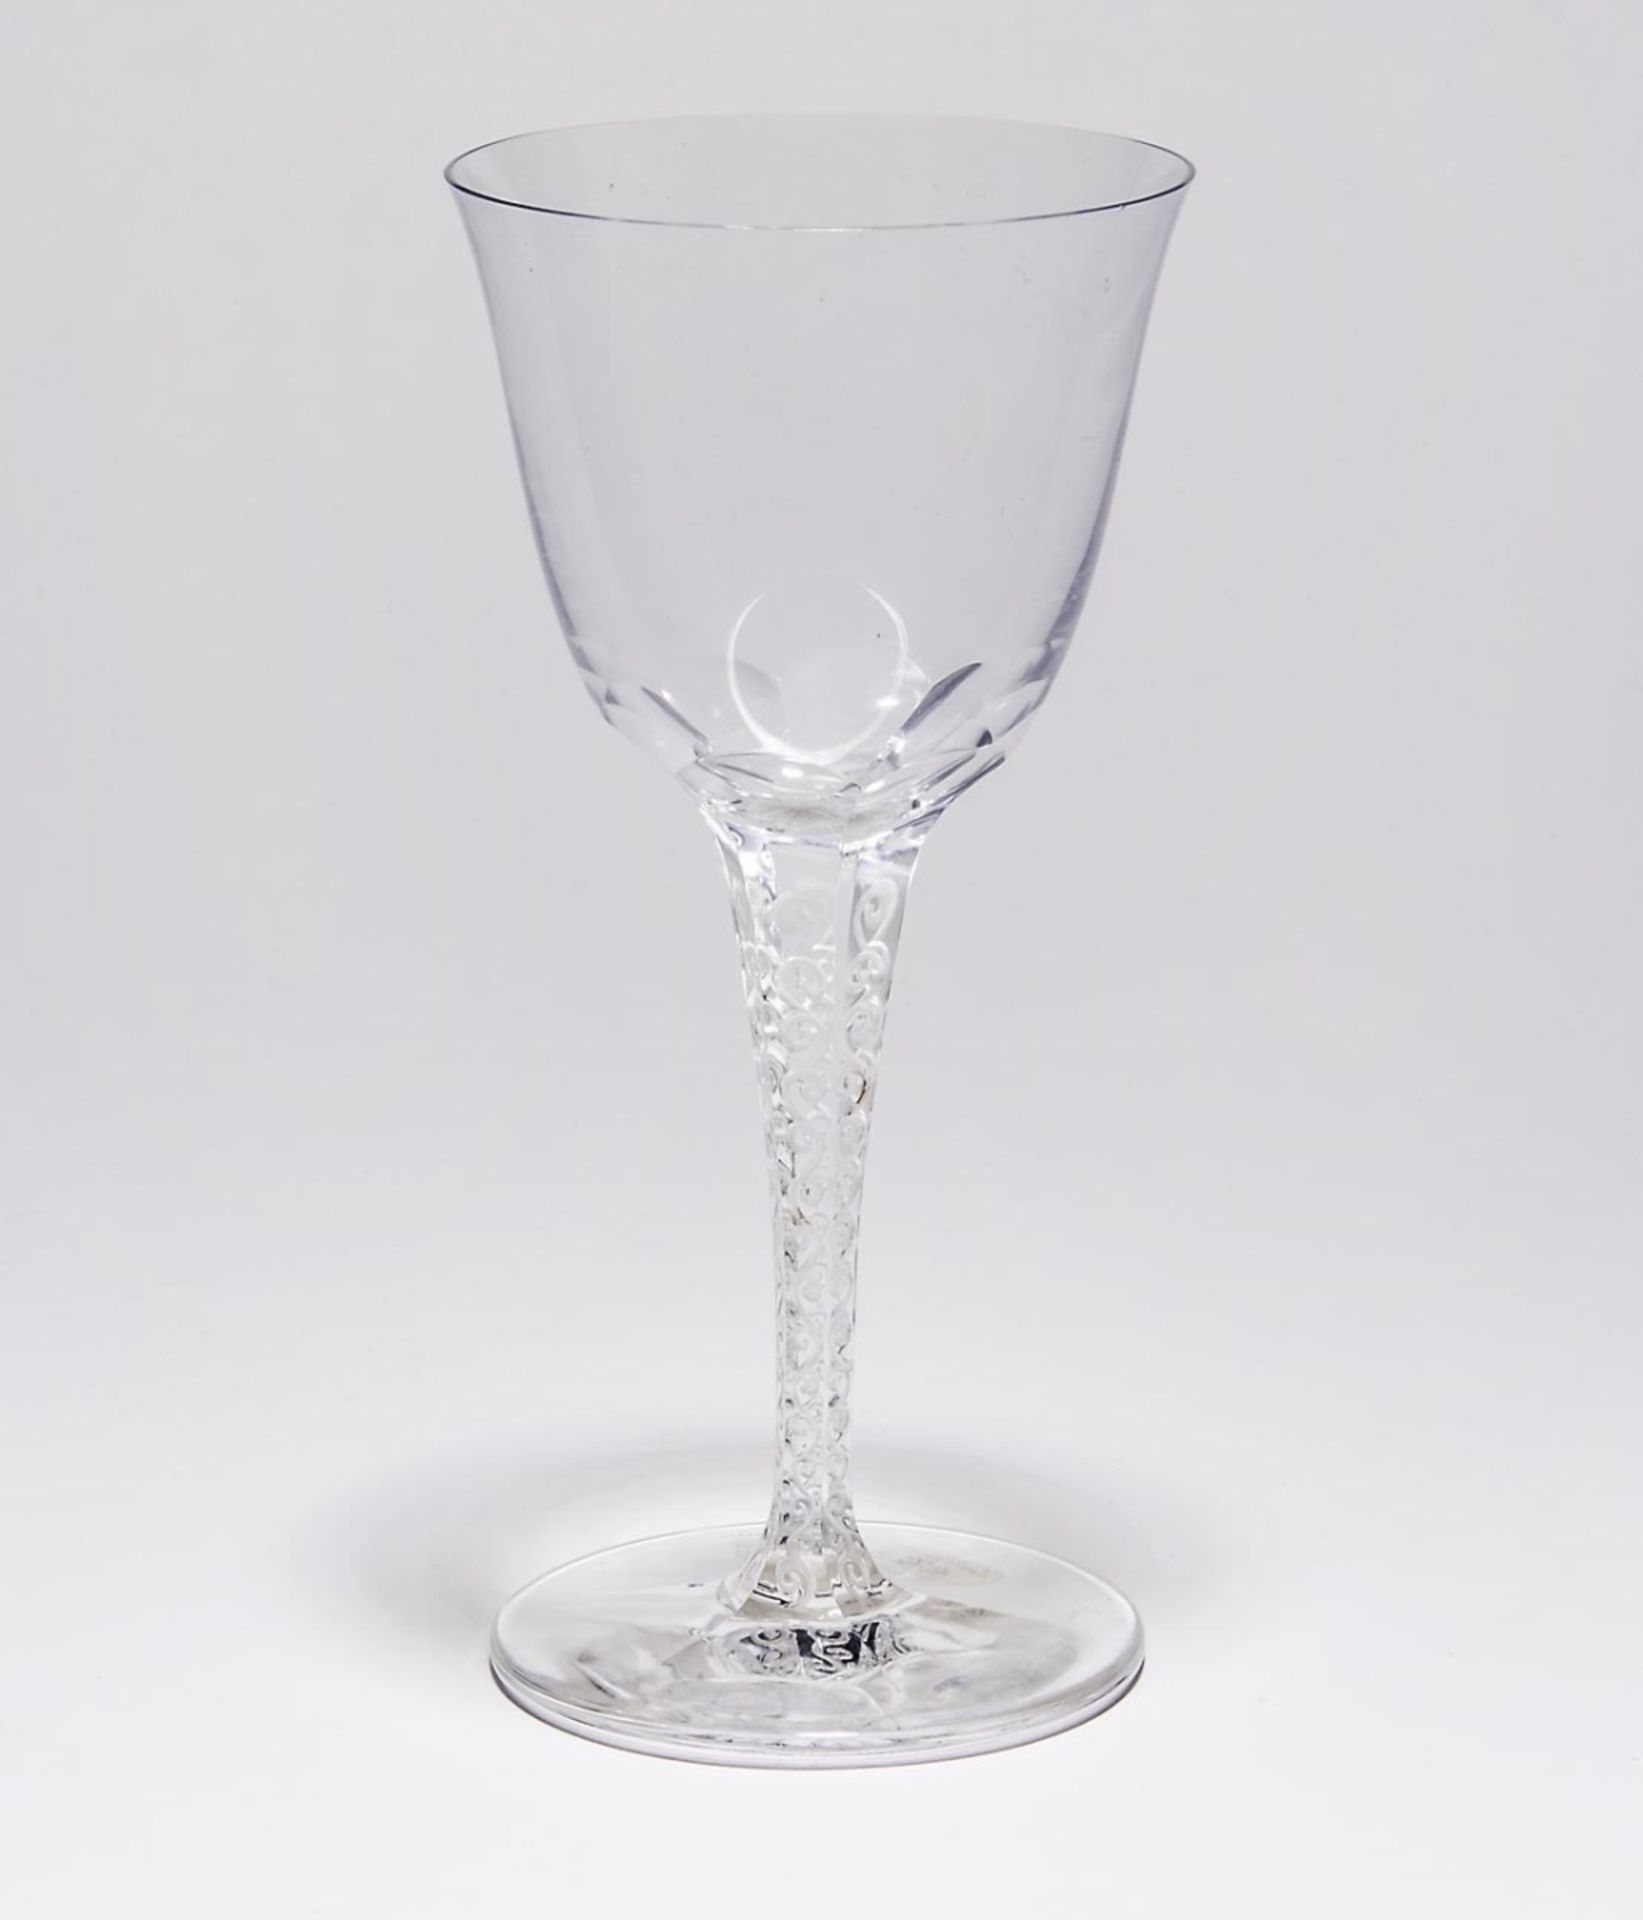 Weinglas "í‰lysée", René Lalique, Wingen-sur-Moder - um 1923